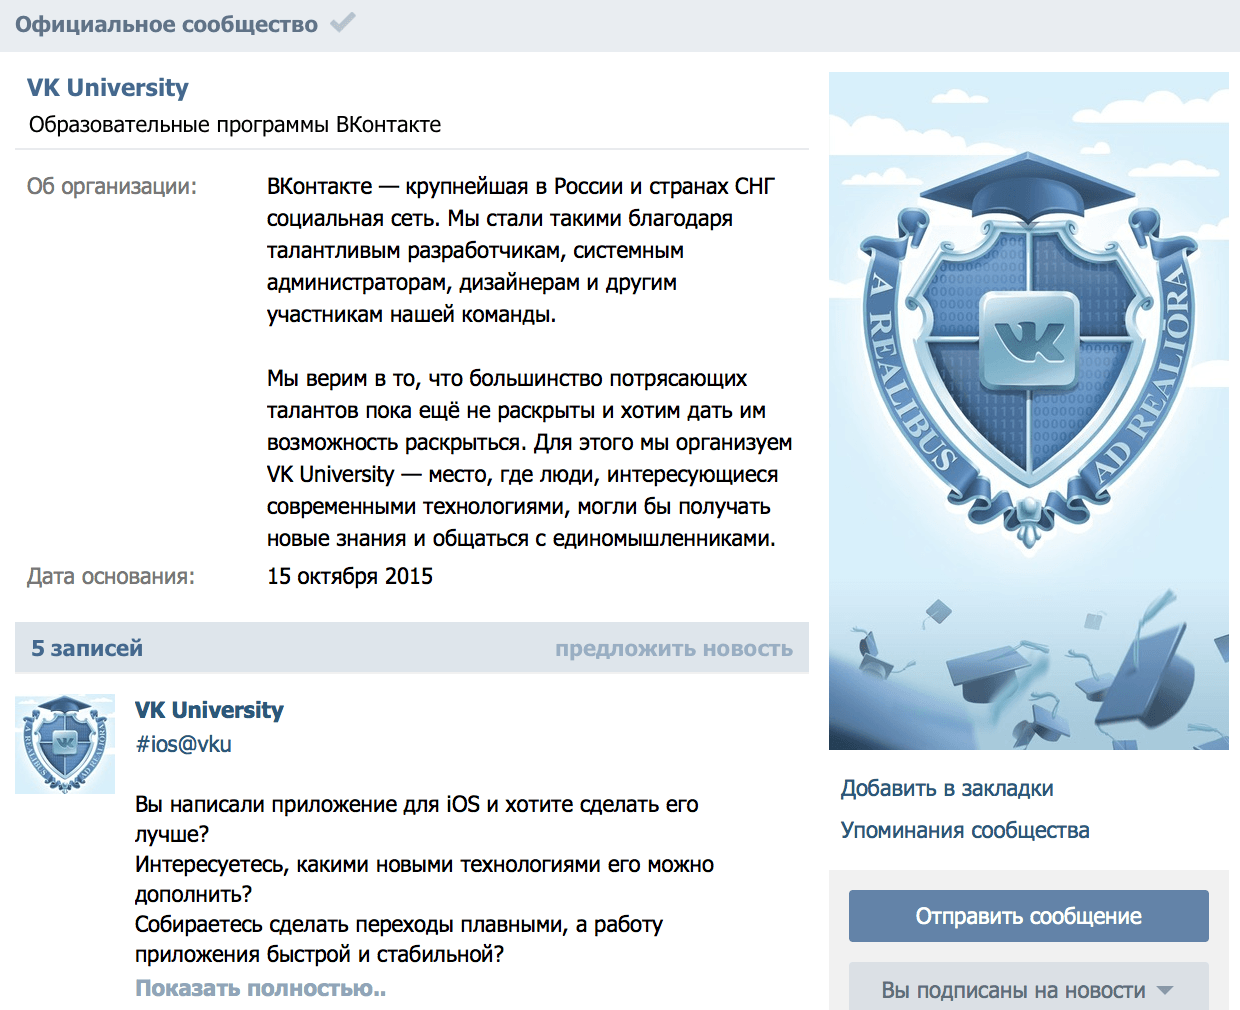 «ВКонтакте» открывает свой университет, Miracle, 10 ноя 2015, 19:15, скачанные файлы-min.png